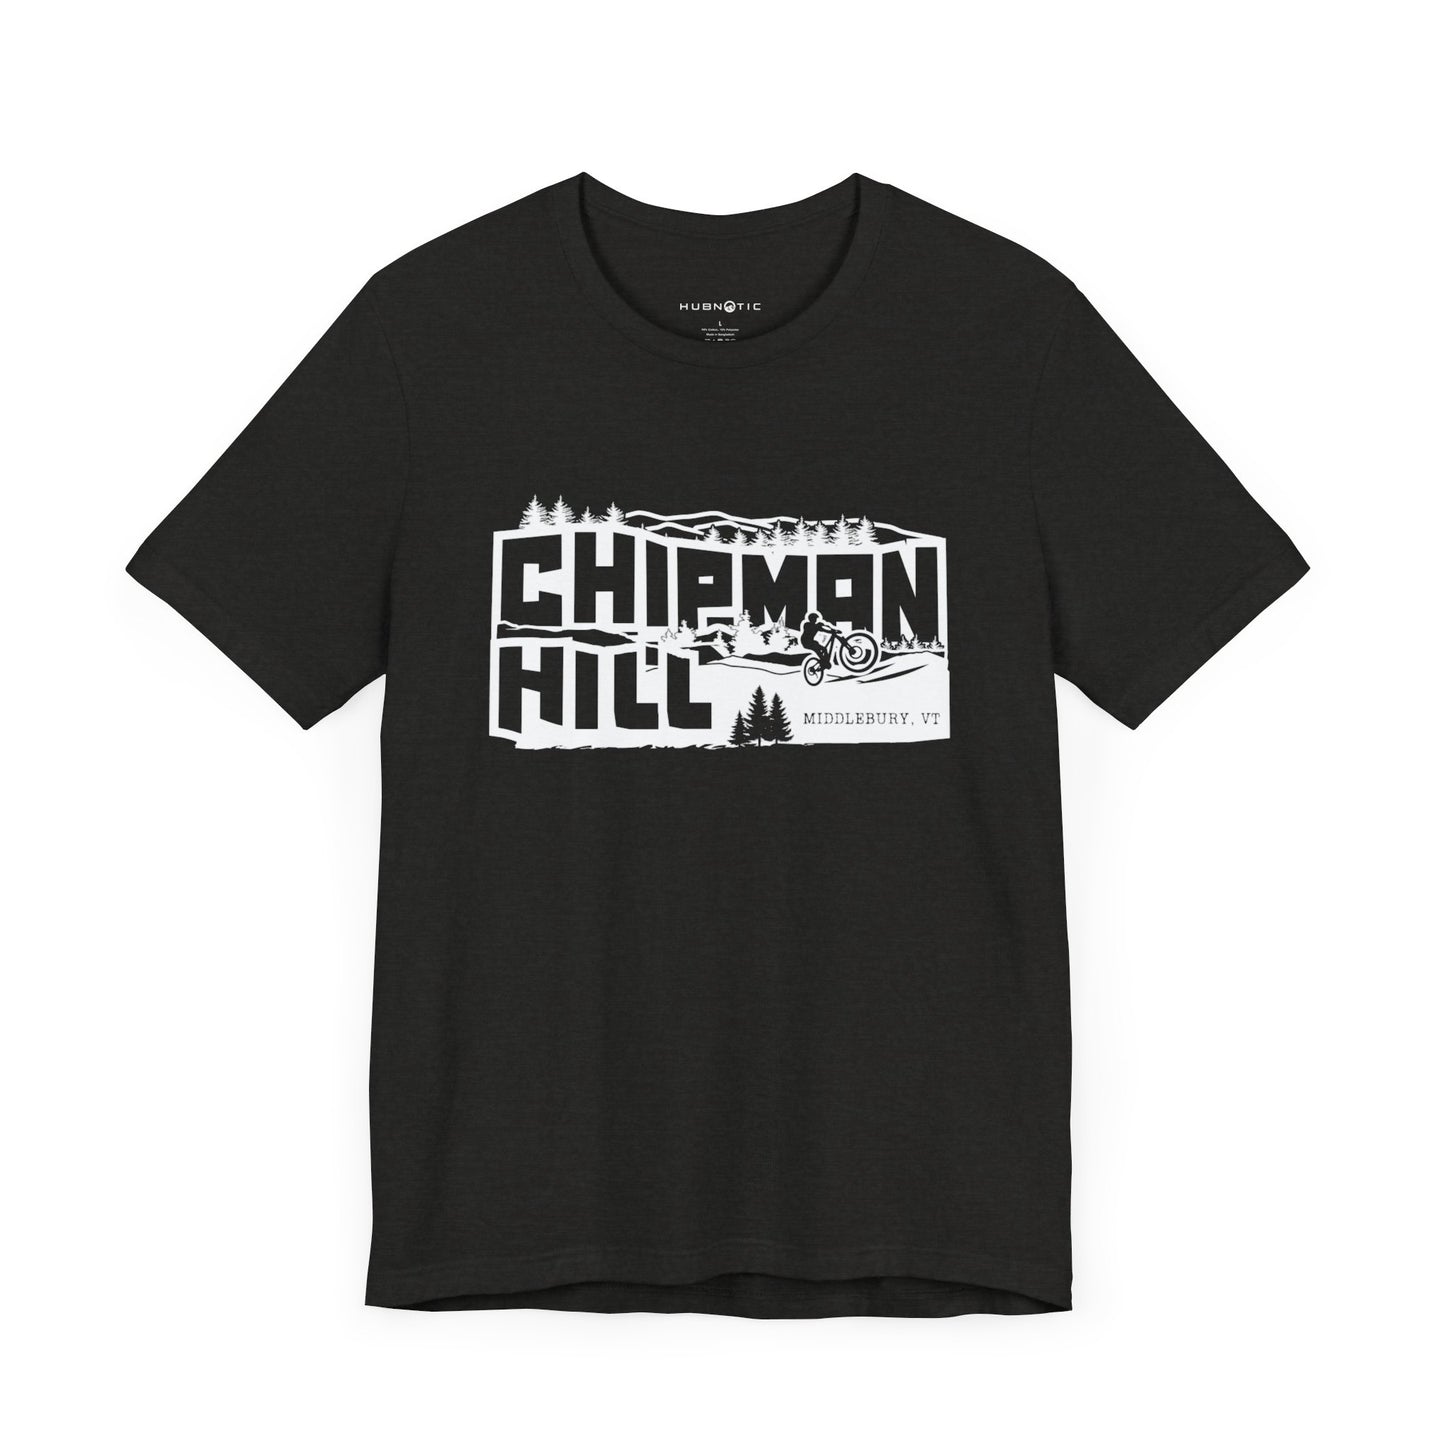 Chipman Hill T